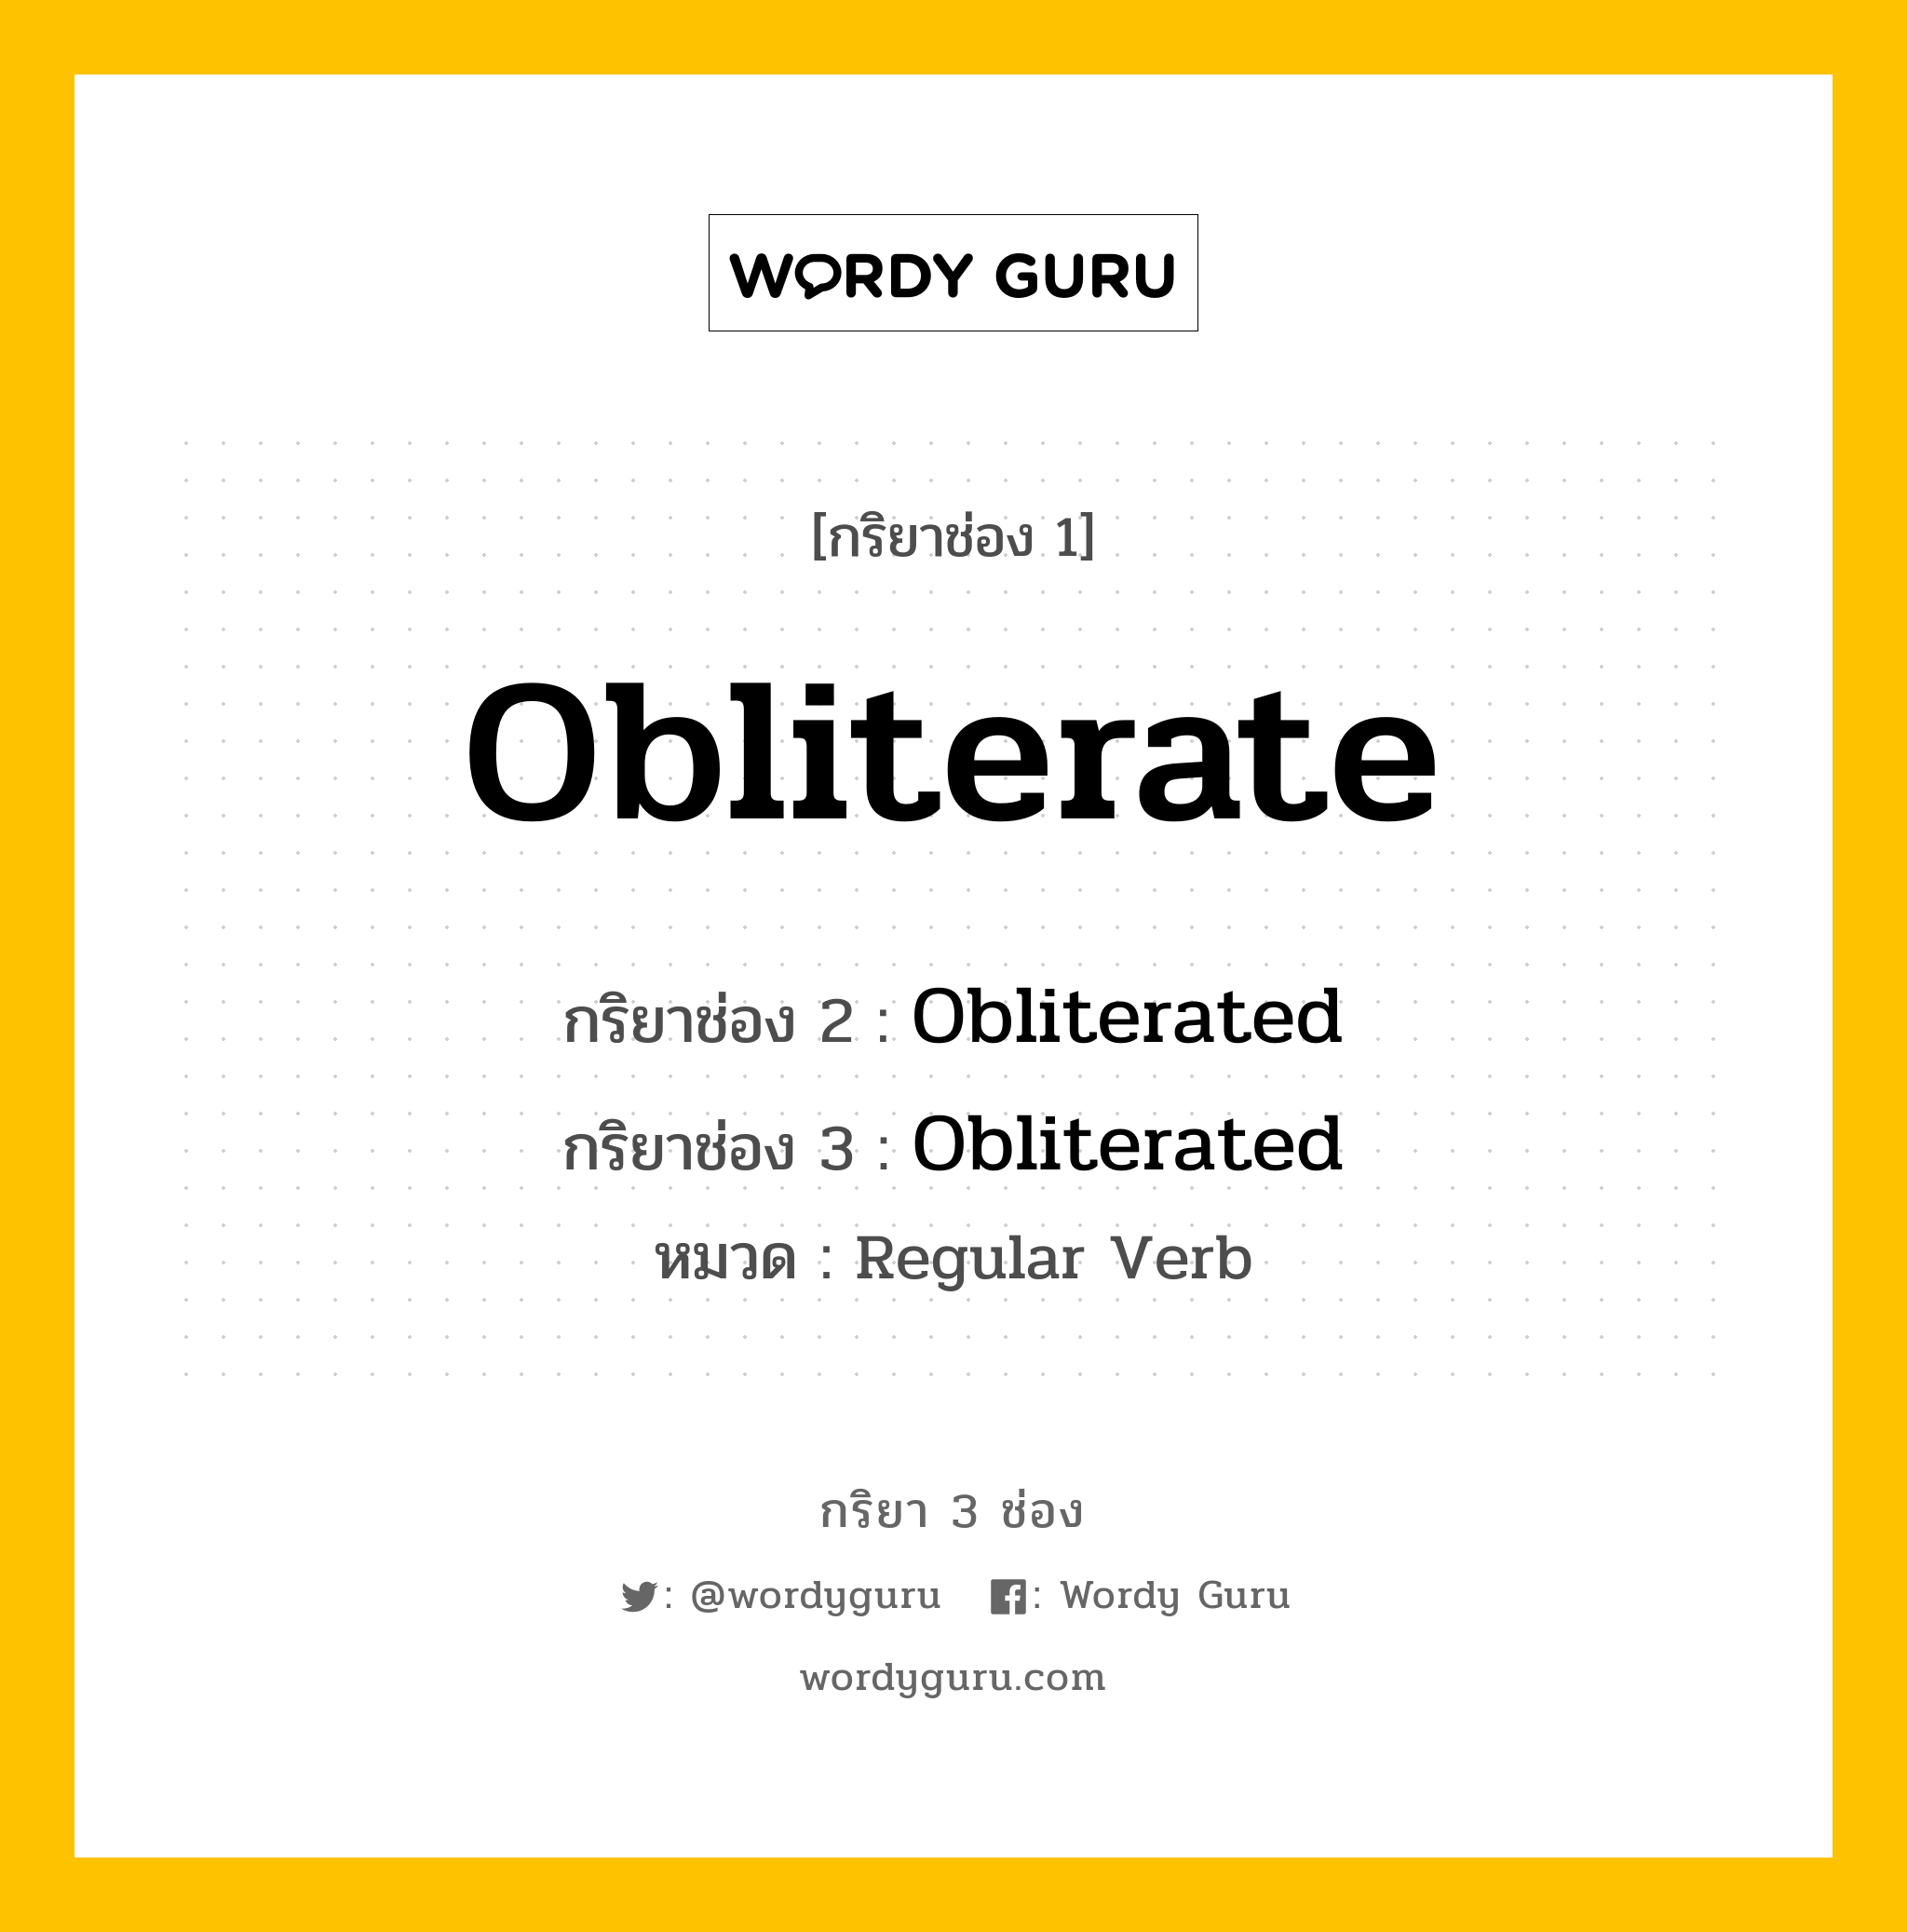 กริยา 3 ช่อง: Obliterate ช่อง 2 Obliterate ช่อง 3 คืออะไร, กริยาช่อง 1 Obliterate กริยาช่อง 2 Obliterated กริยาช่อง 3 Obliterated หมวด Regular Verb หมวด Regular Verb